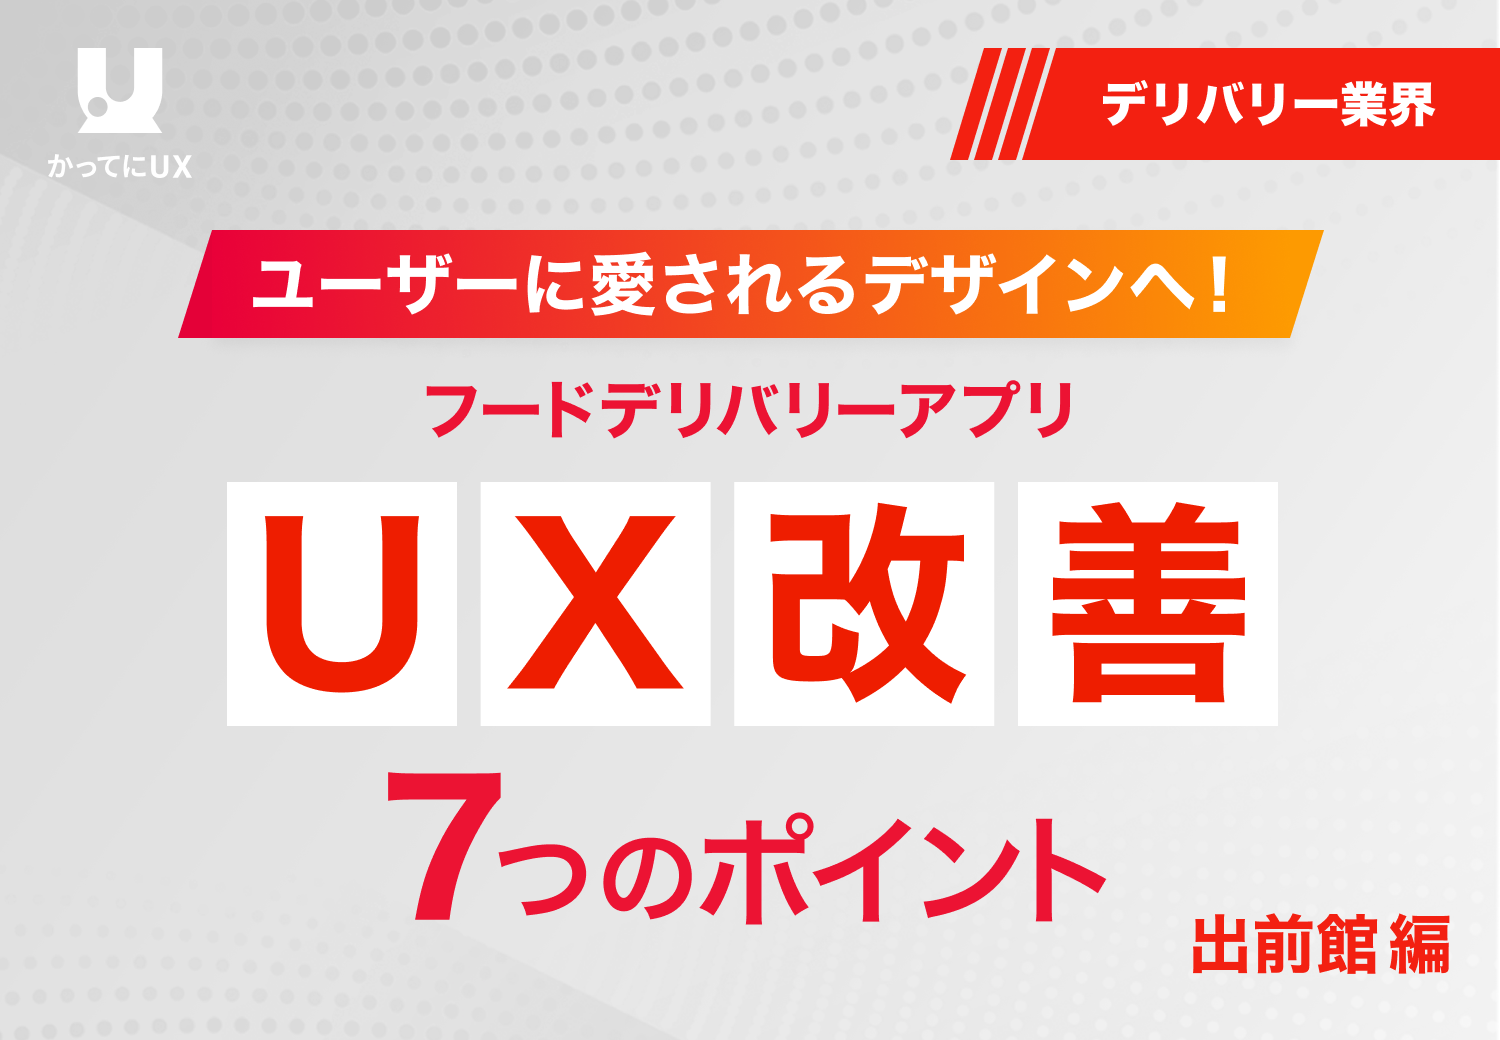 ユーザーに愛されるデザインへ! フードデリバリーアプリ UX改善の7つのポイント